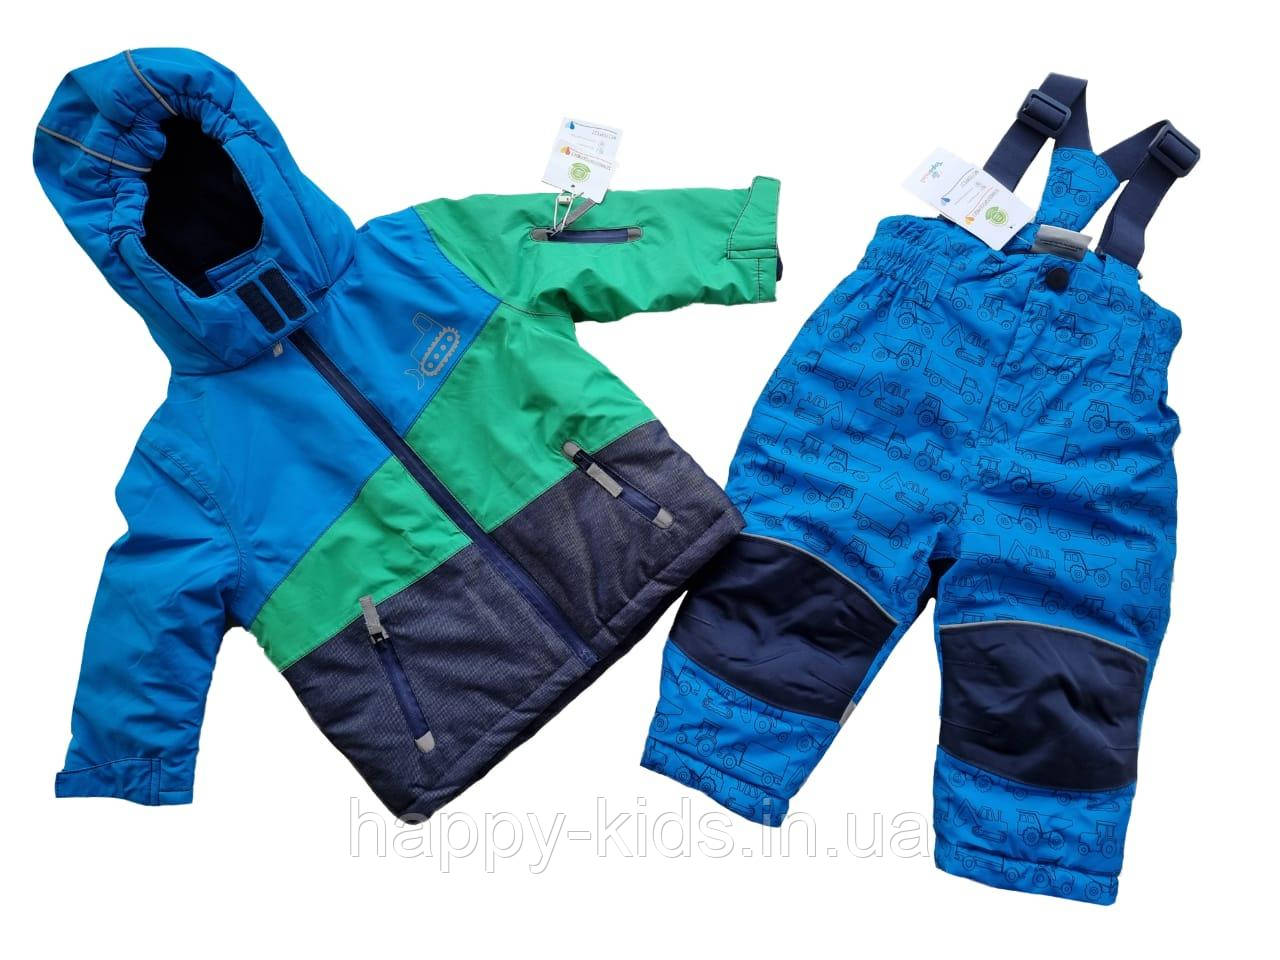 Дитячий костюм для хлопчика 86 см куртка + штани Еrnstings family Німеччина.